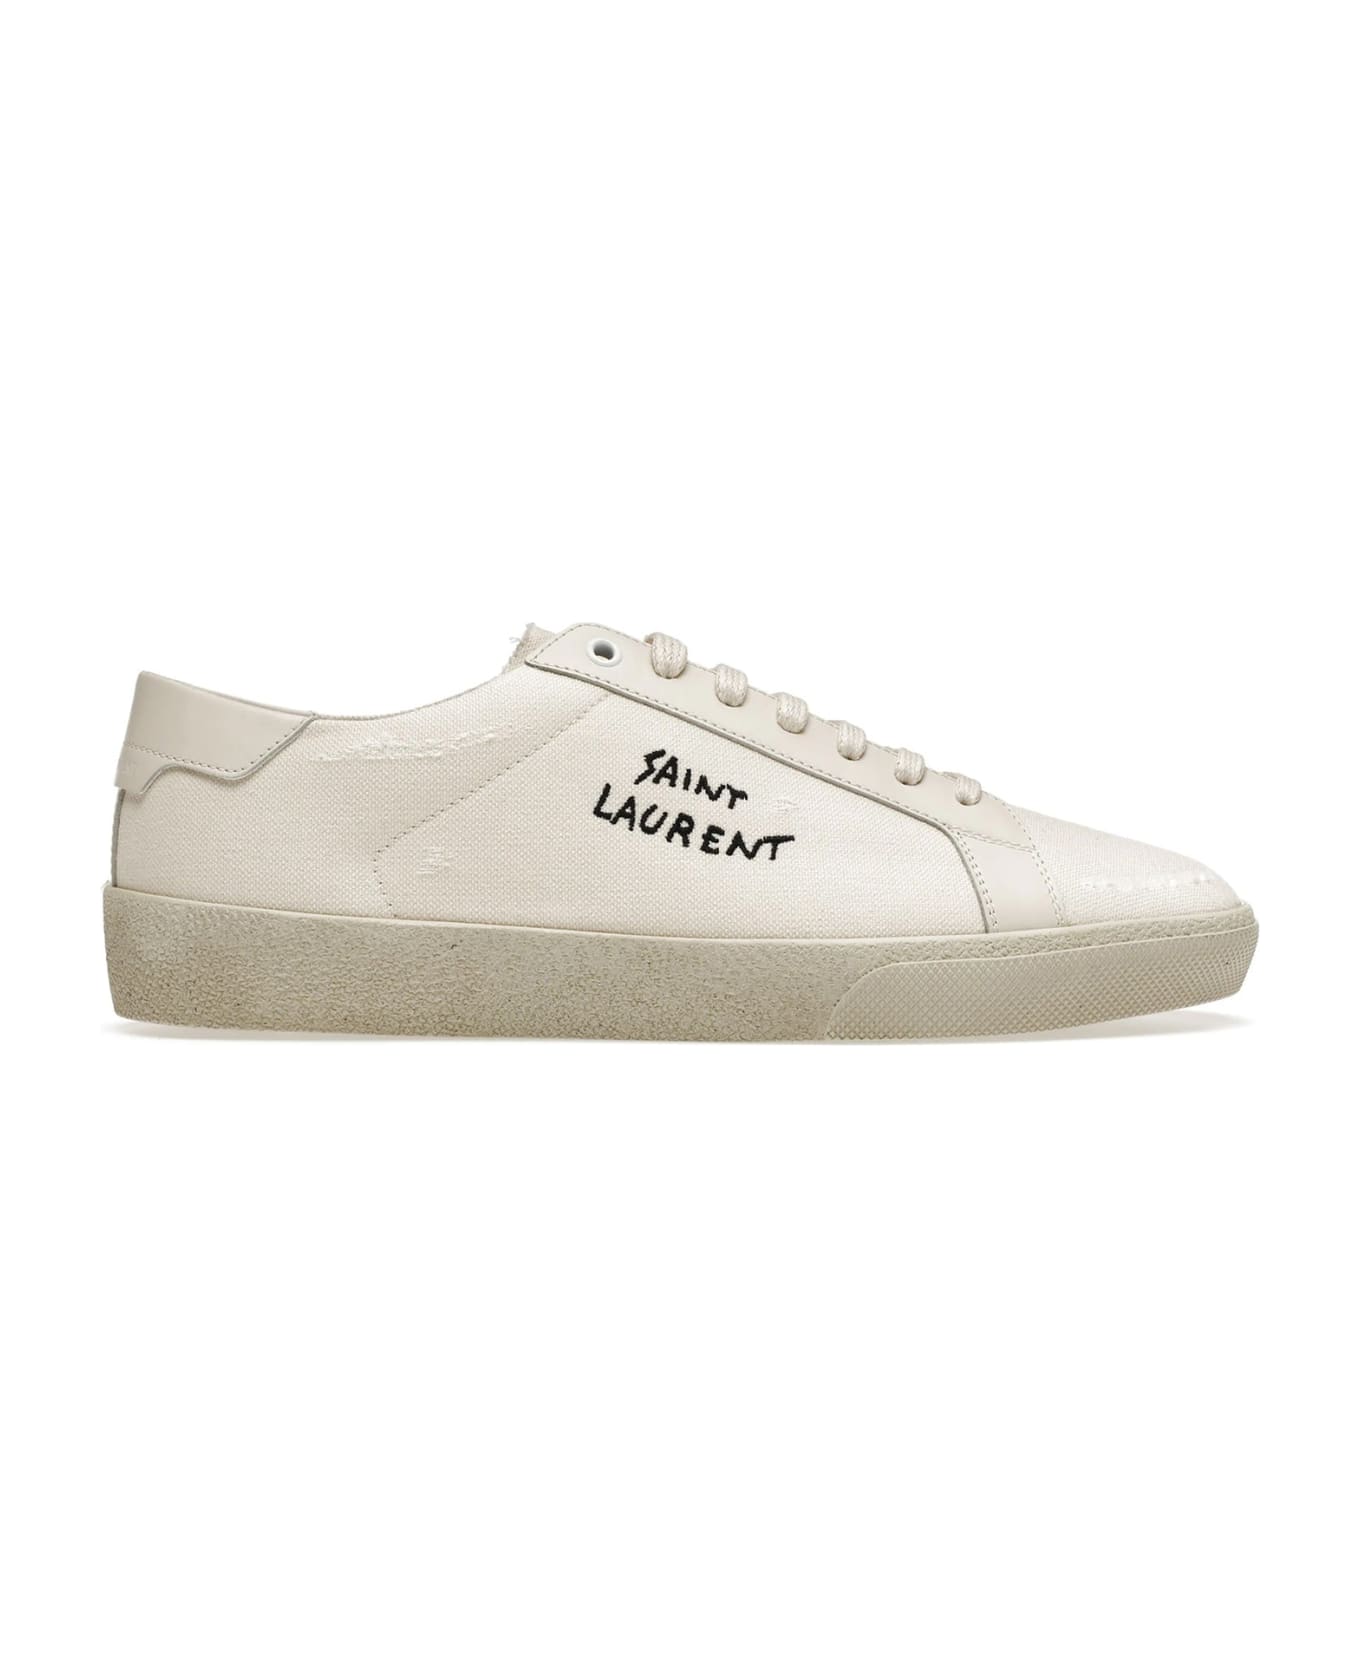 Saint Laurent Canvas Logo Sneakers - White